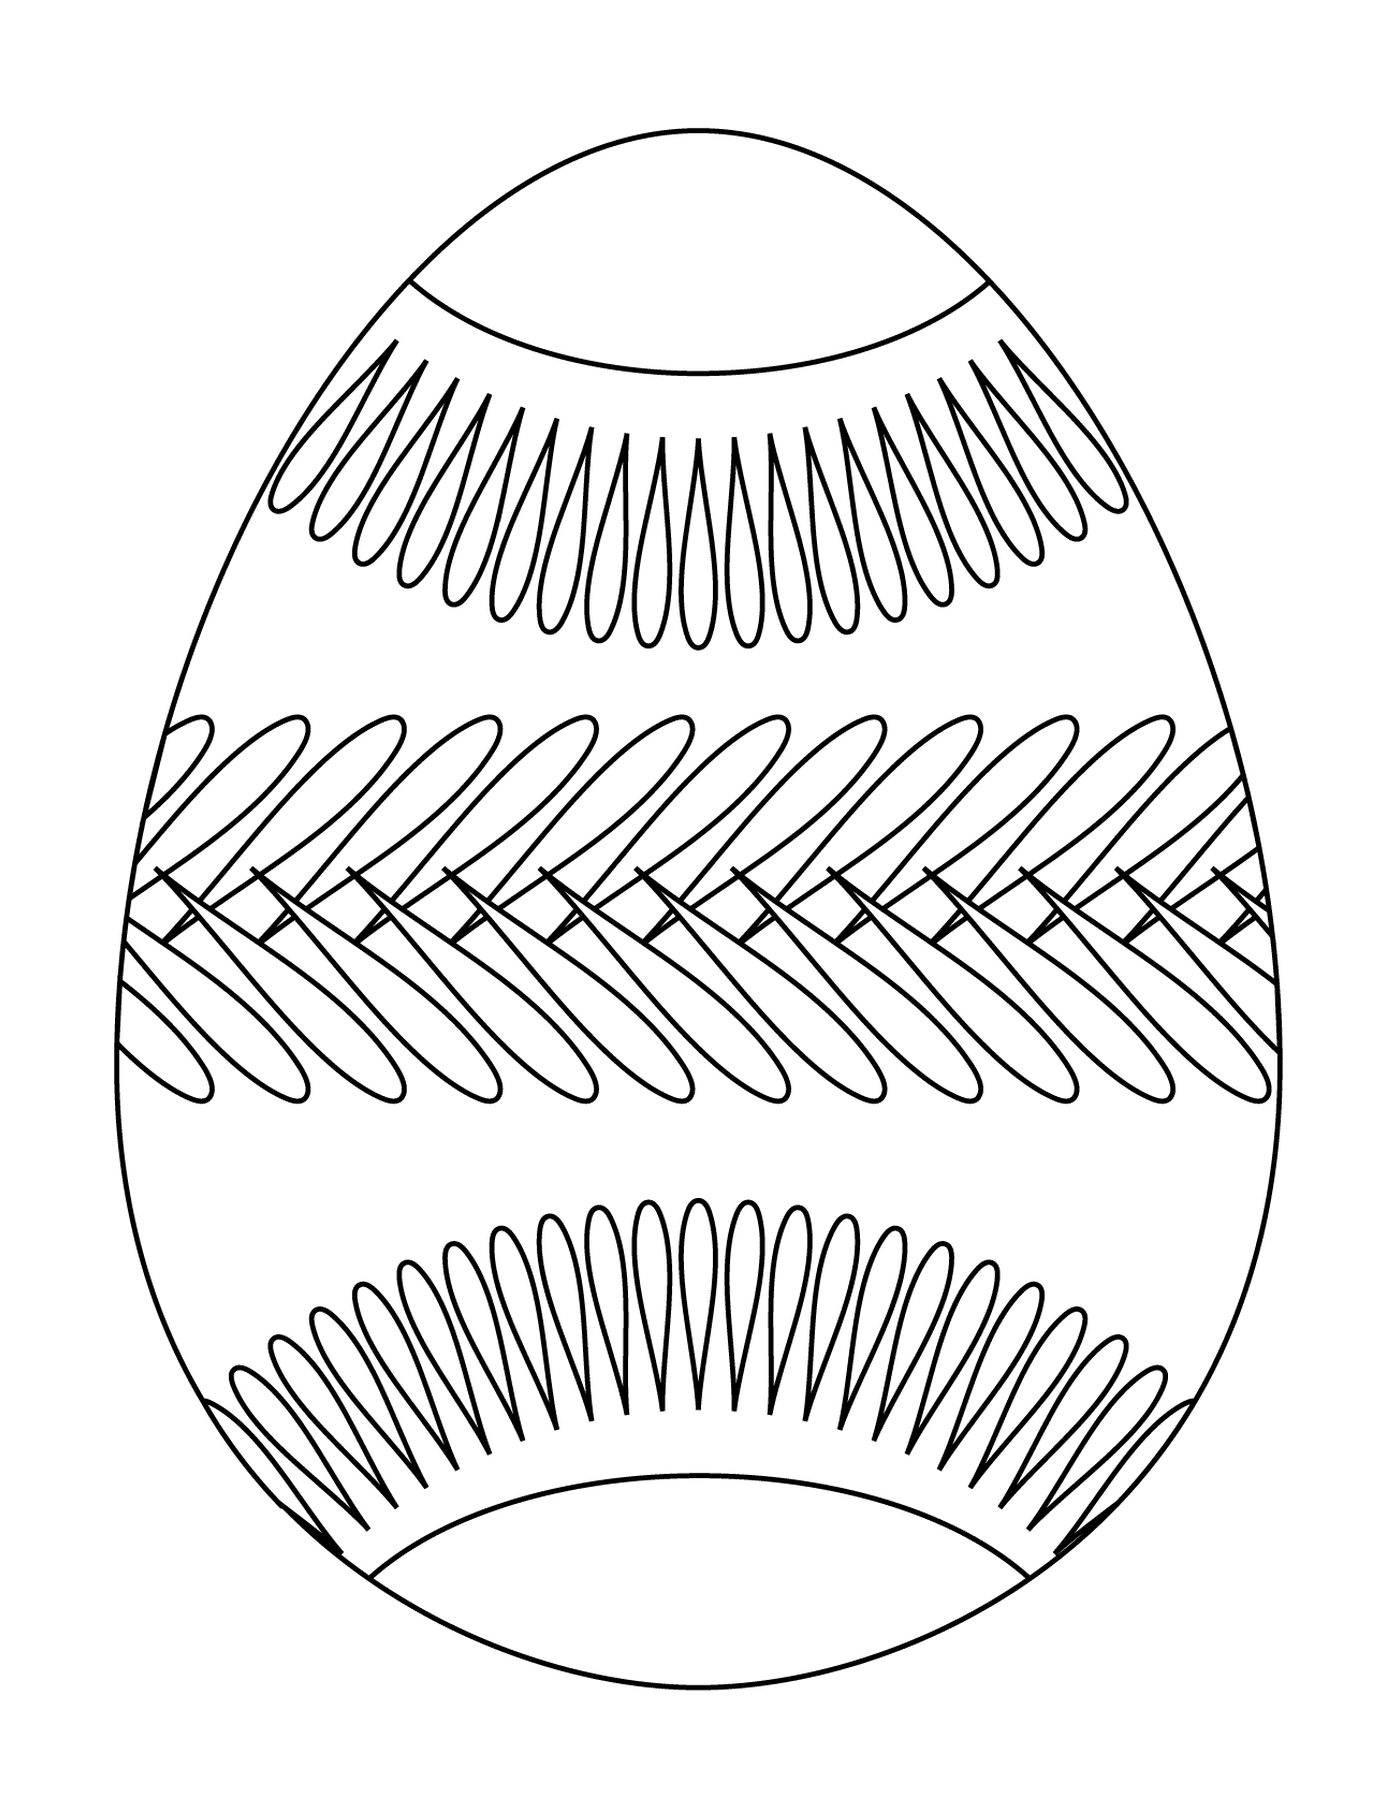  Huevo de Pascua con patrón de cinturón, huevo decorado 